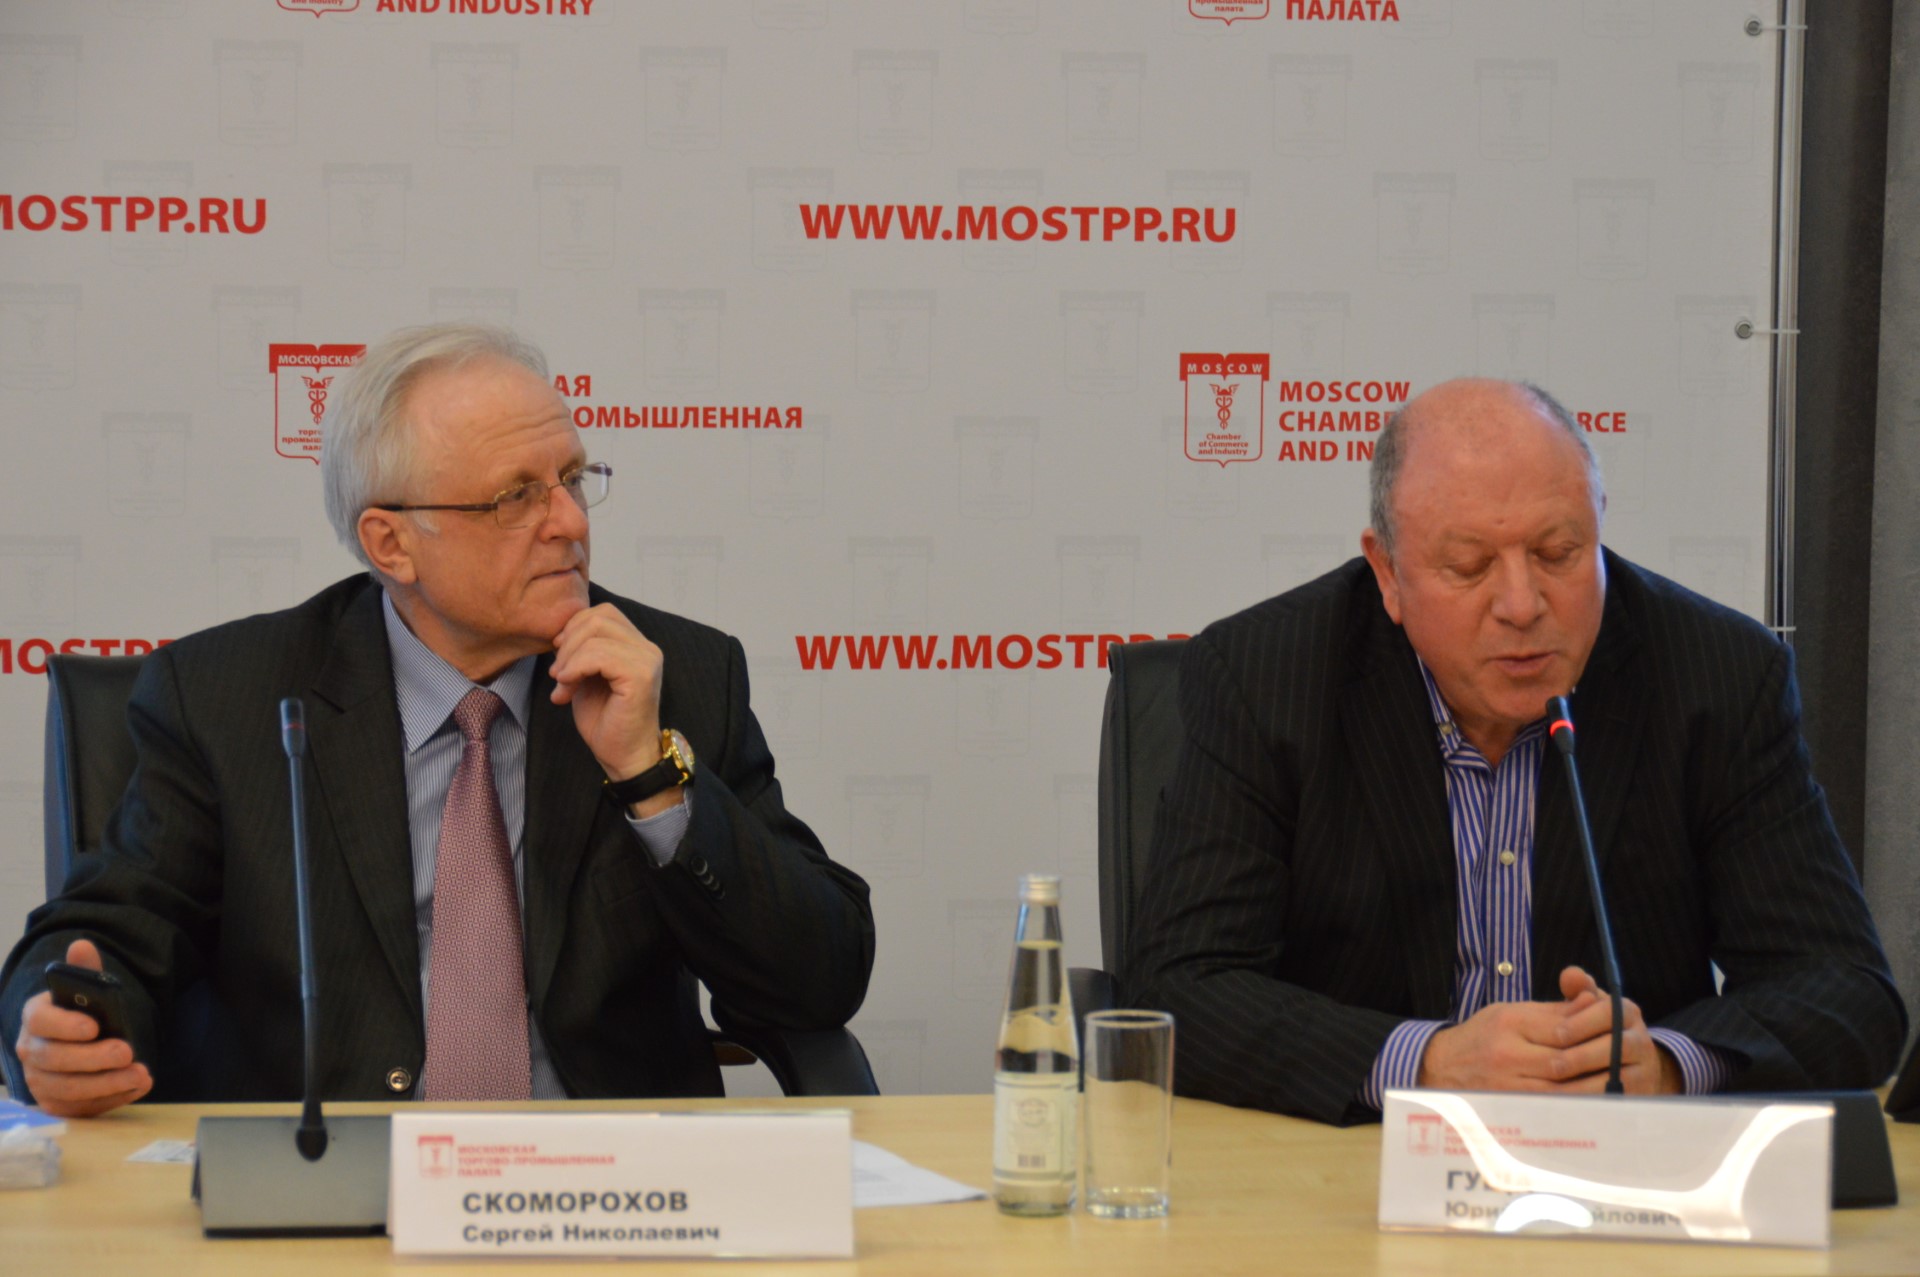 Комитет МТПП по развитию предпринимательства в АПК ознакомился с успешным опытом производства российского оборудования для переработки молока